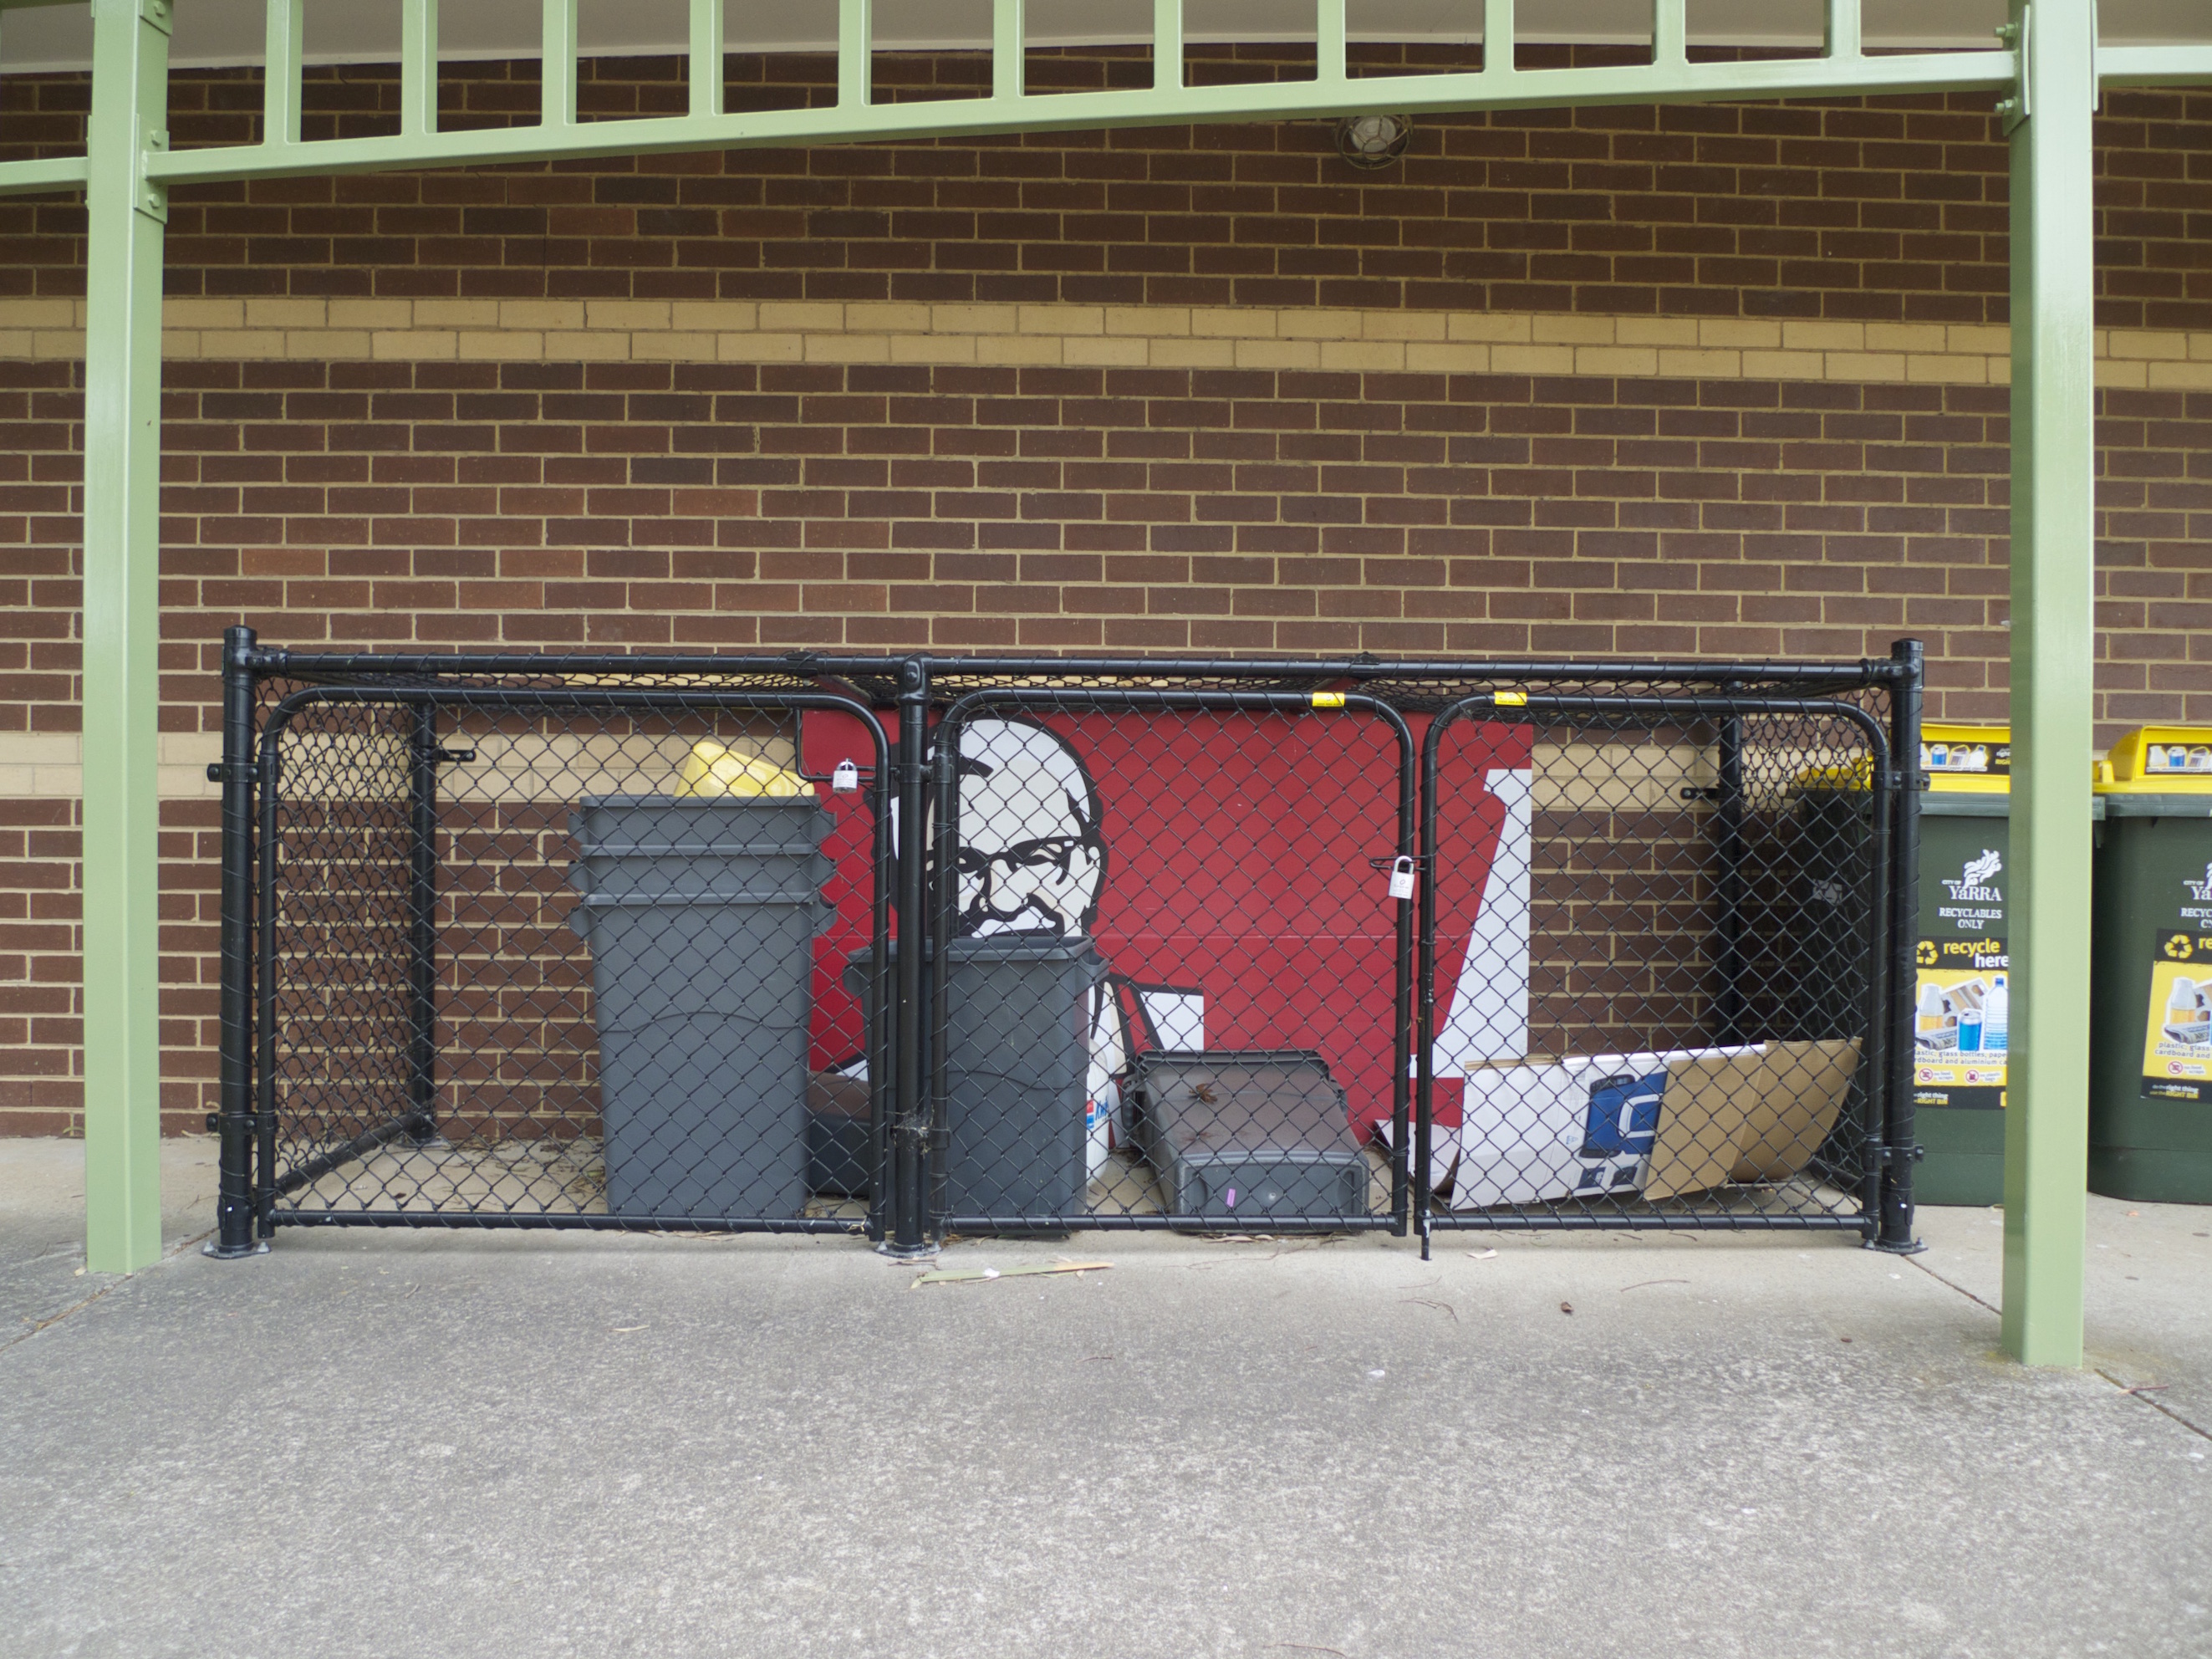 Un morceau d'une grande illustration KFC sous verrou dans un espace poubelle grillagé, devant un mur en briques